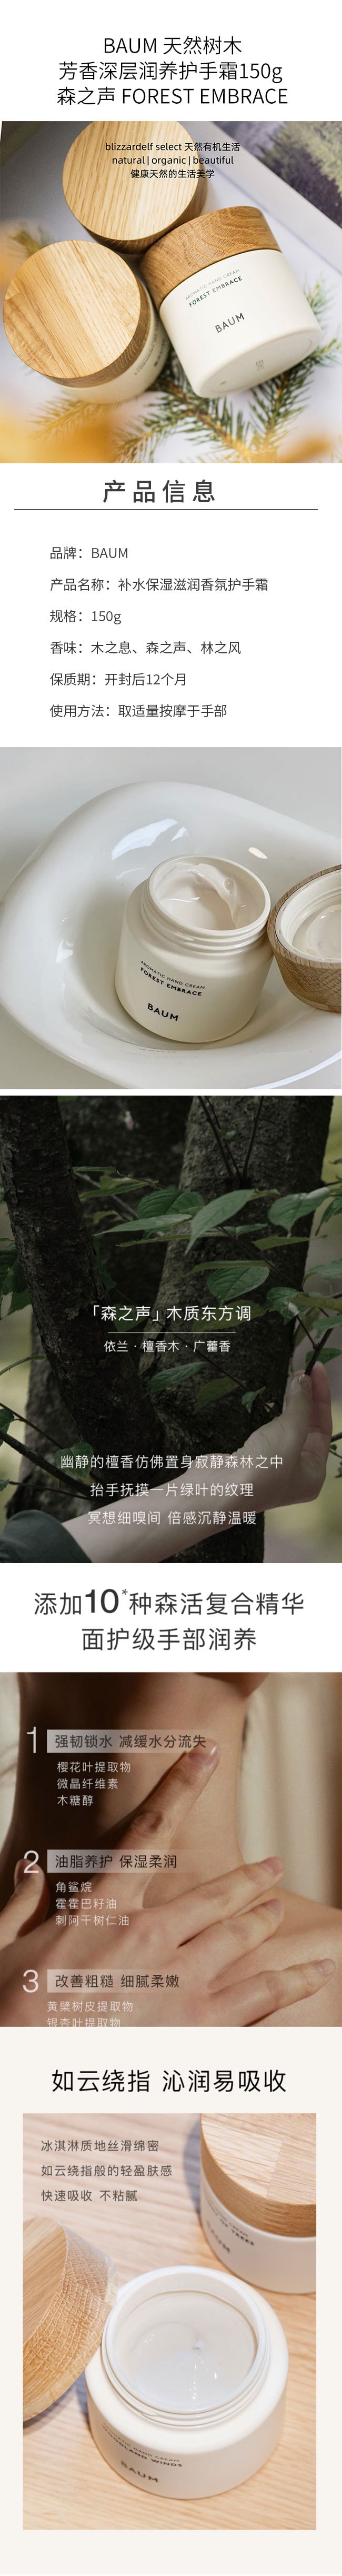 【日本直效郵件】BAUM 天然樹木芳香深層潤養護手霜150g 森之聲